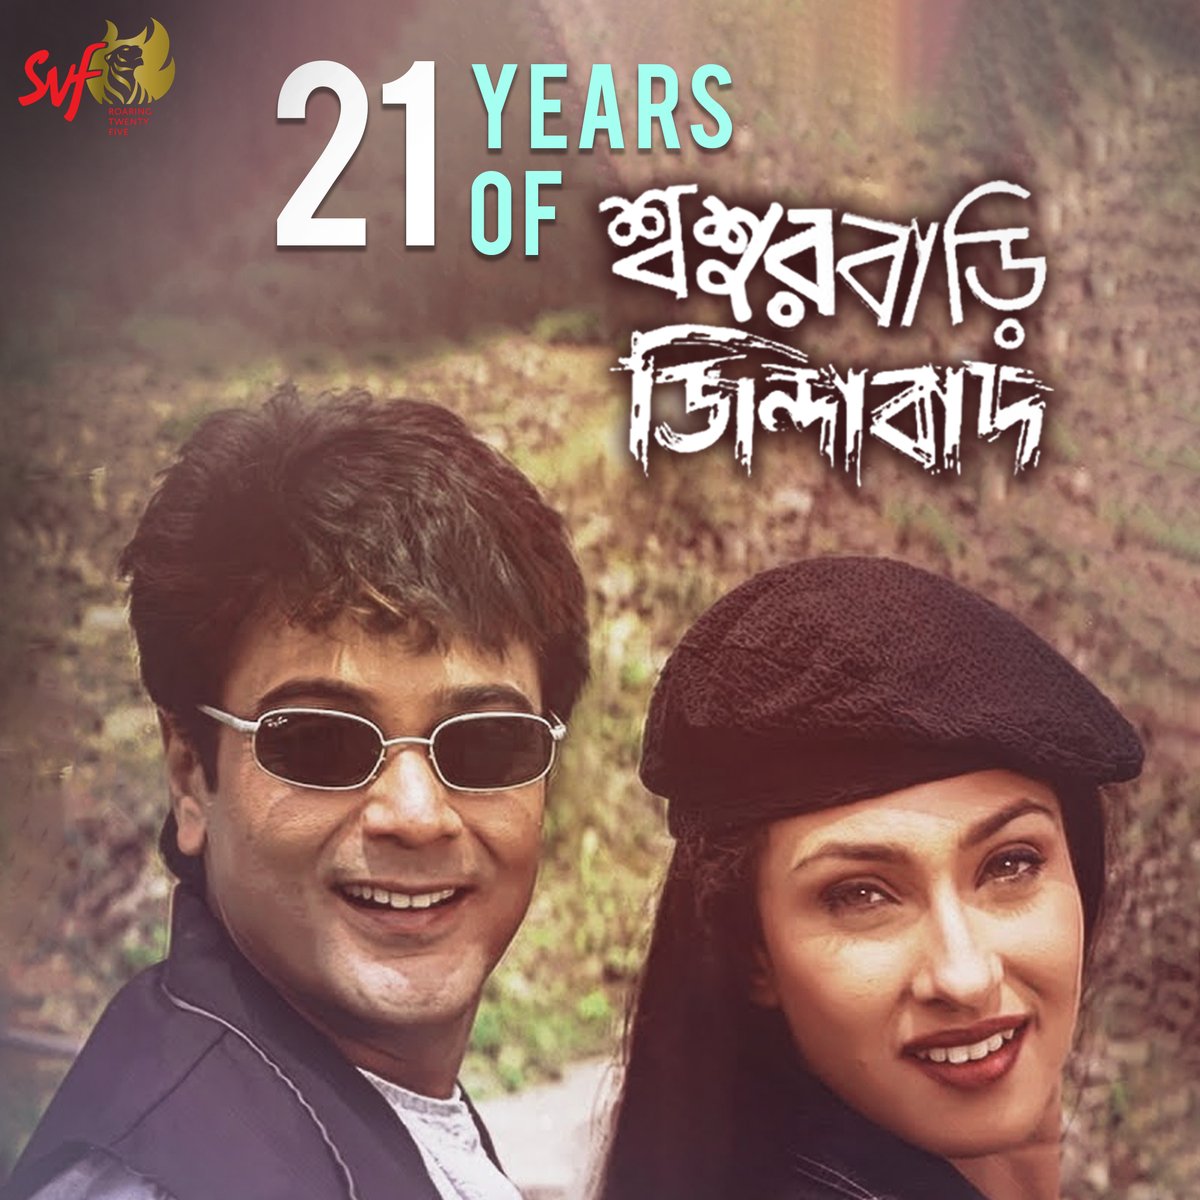 দারুন comedy, ফাটাফাটি dialogue ও দুর্দান্ত গান ঘিরে রূপা আর সমুর epic love story! 
Celebrating 21 years of #SasurbariZindabad 

#HaranathChakraborty @prosenjitbumba @RituparnaSpeaks #RanjitMullick #SubhashishMukherjee @tota_rc